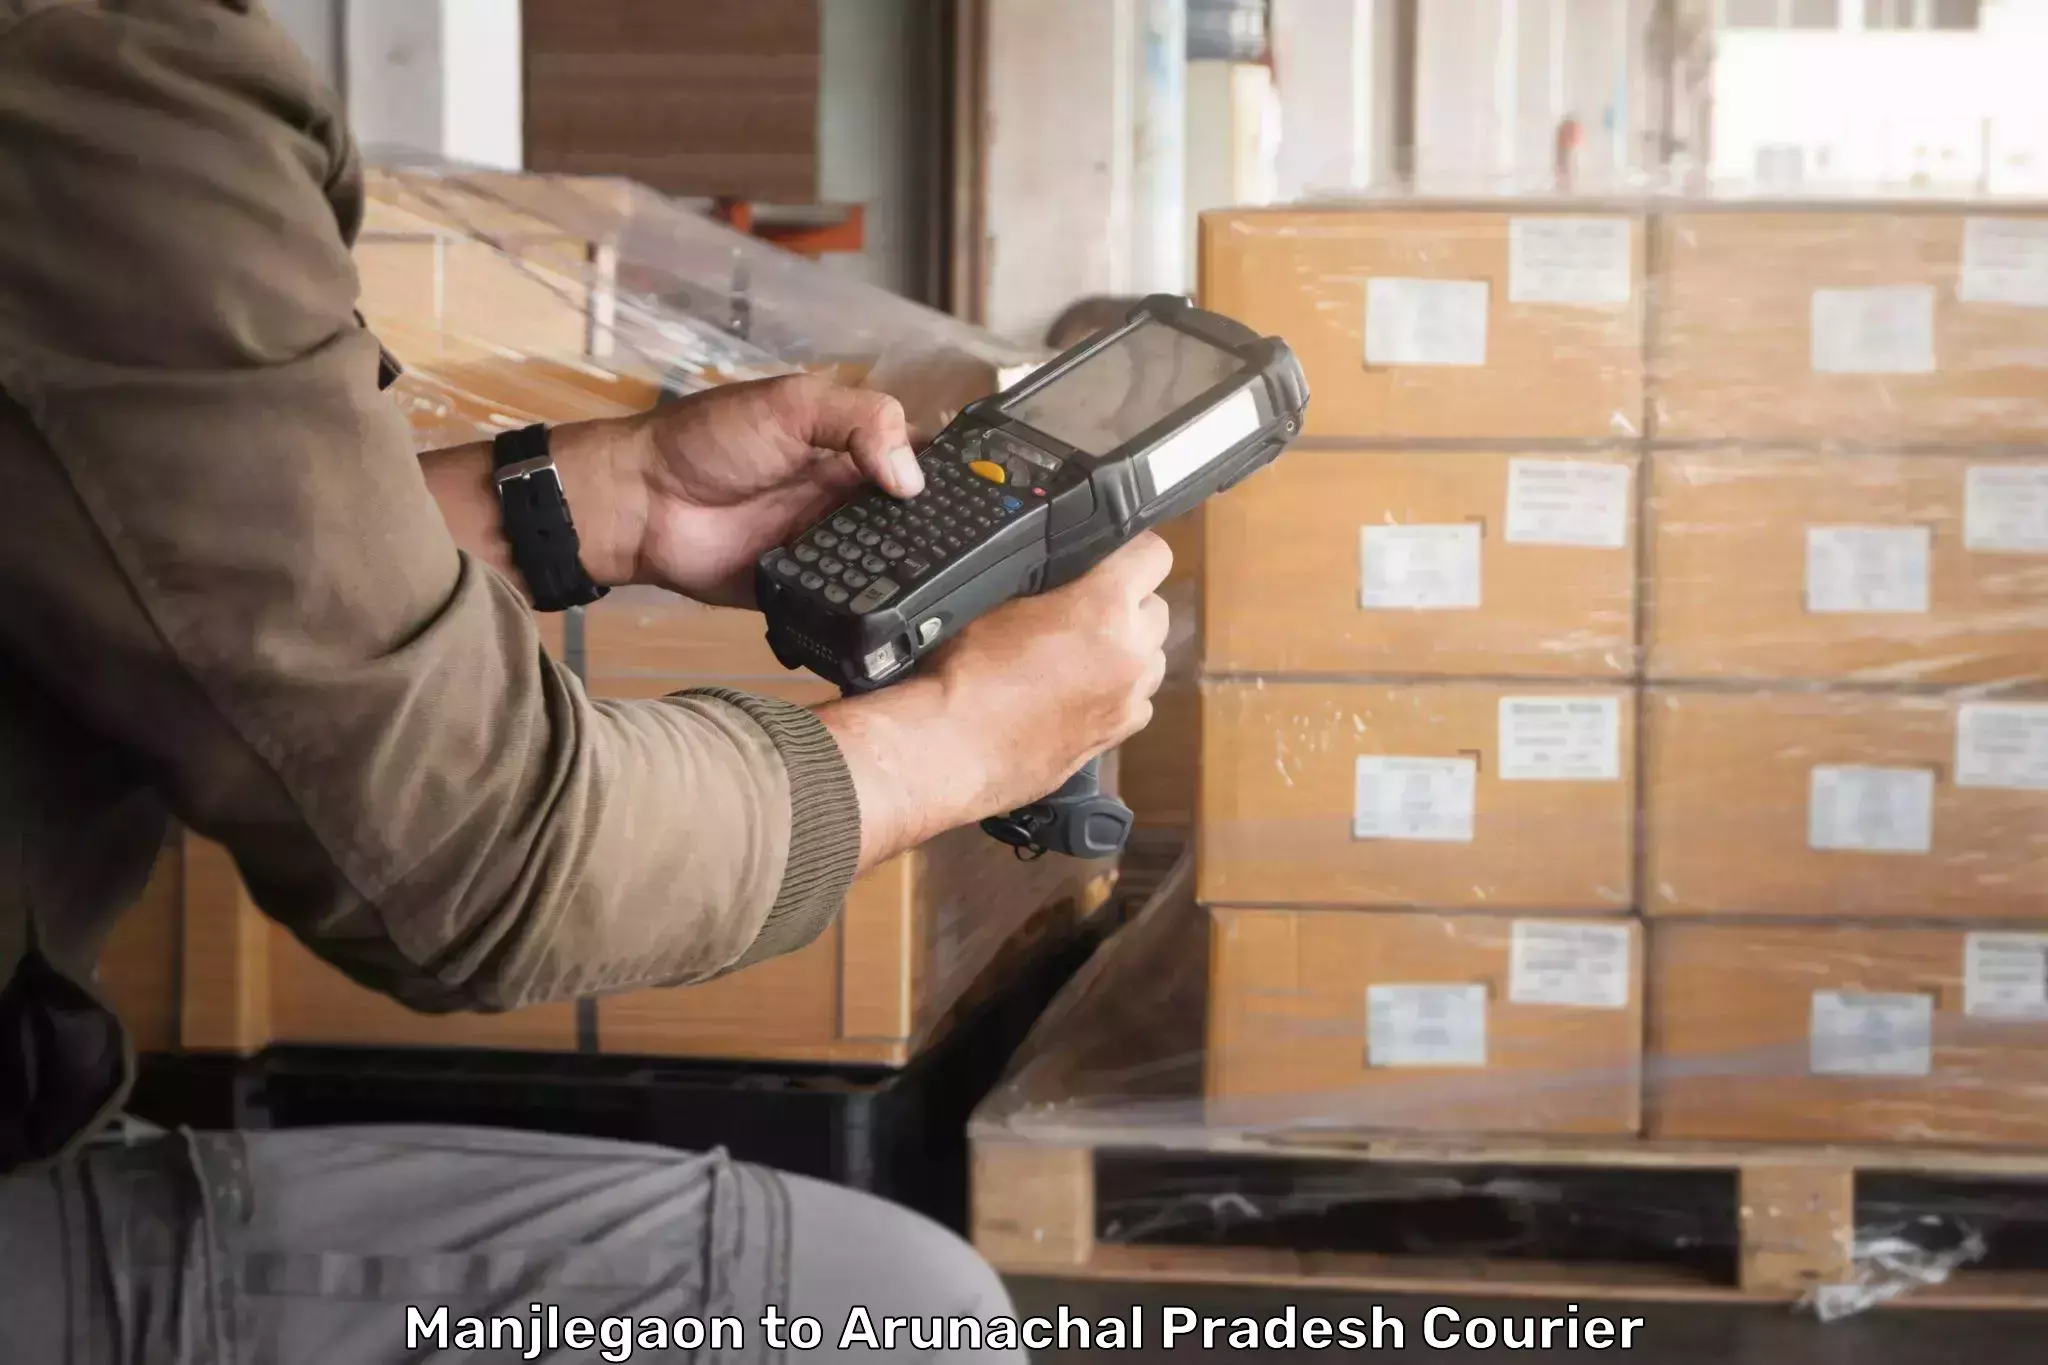 Large package courier Manjlegaon to Arunachal Pradesh